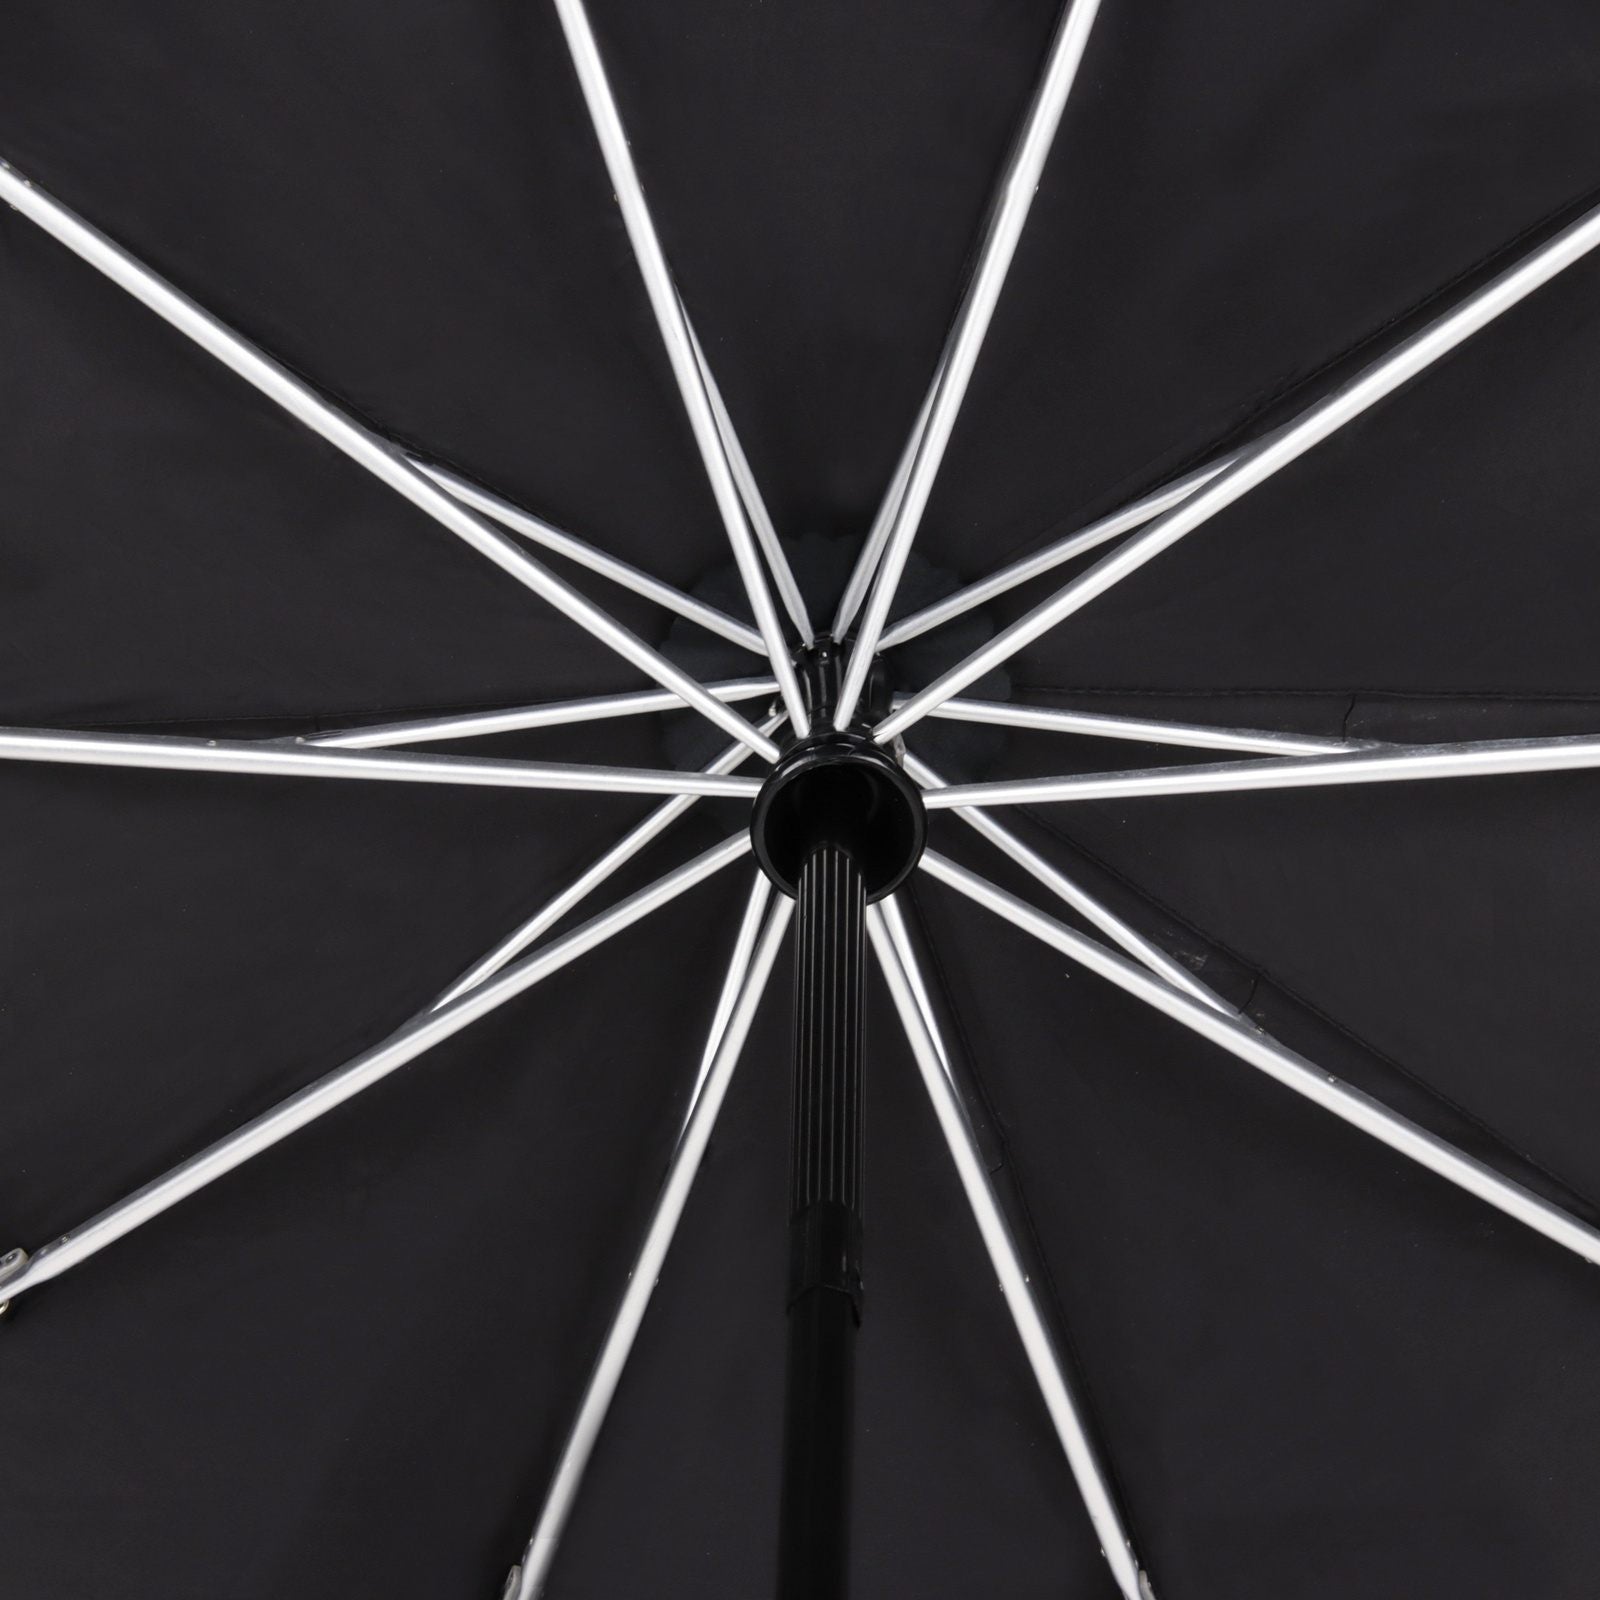 United Entertainment Automatische Paraplu Opvouwbaar Ø 115 cm - Zwart